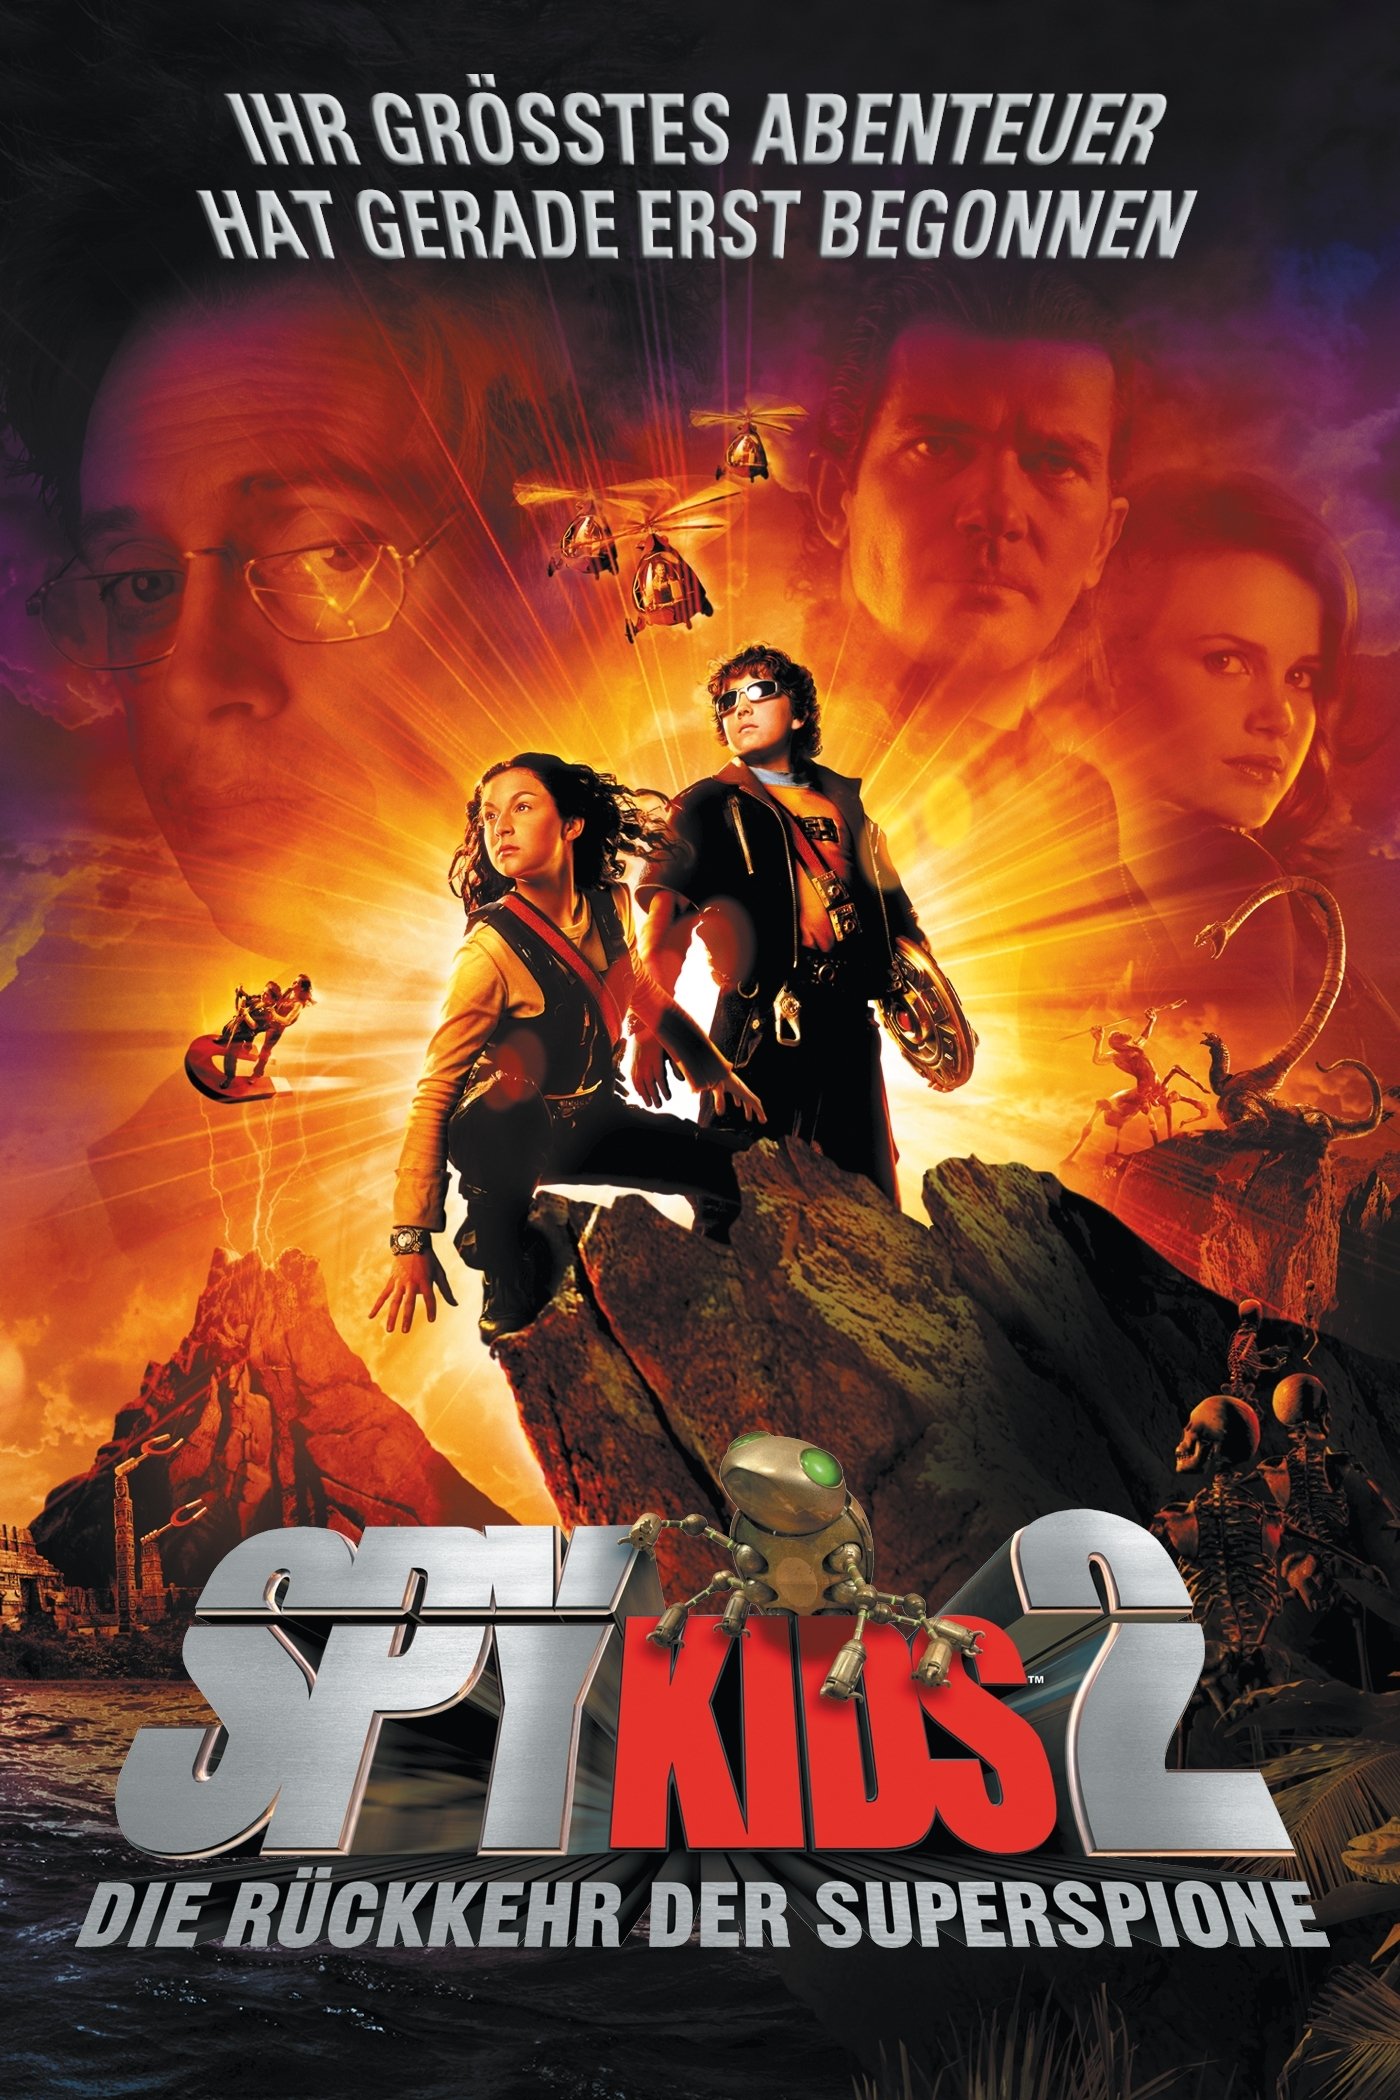 Plakat von "Spy Kids 2 - Die Rückkehr der Superspione"